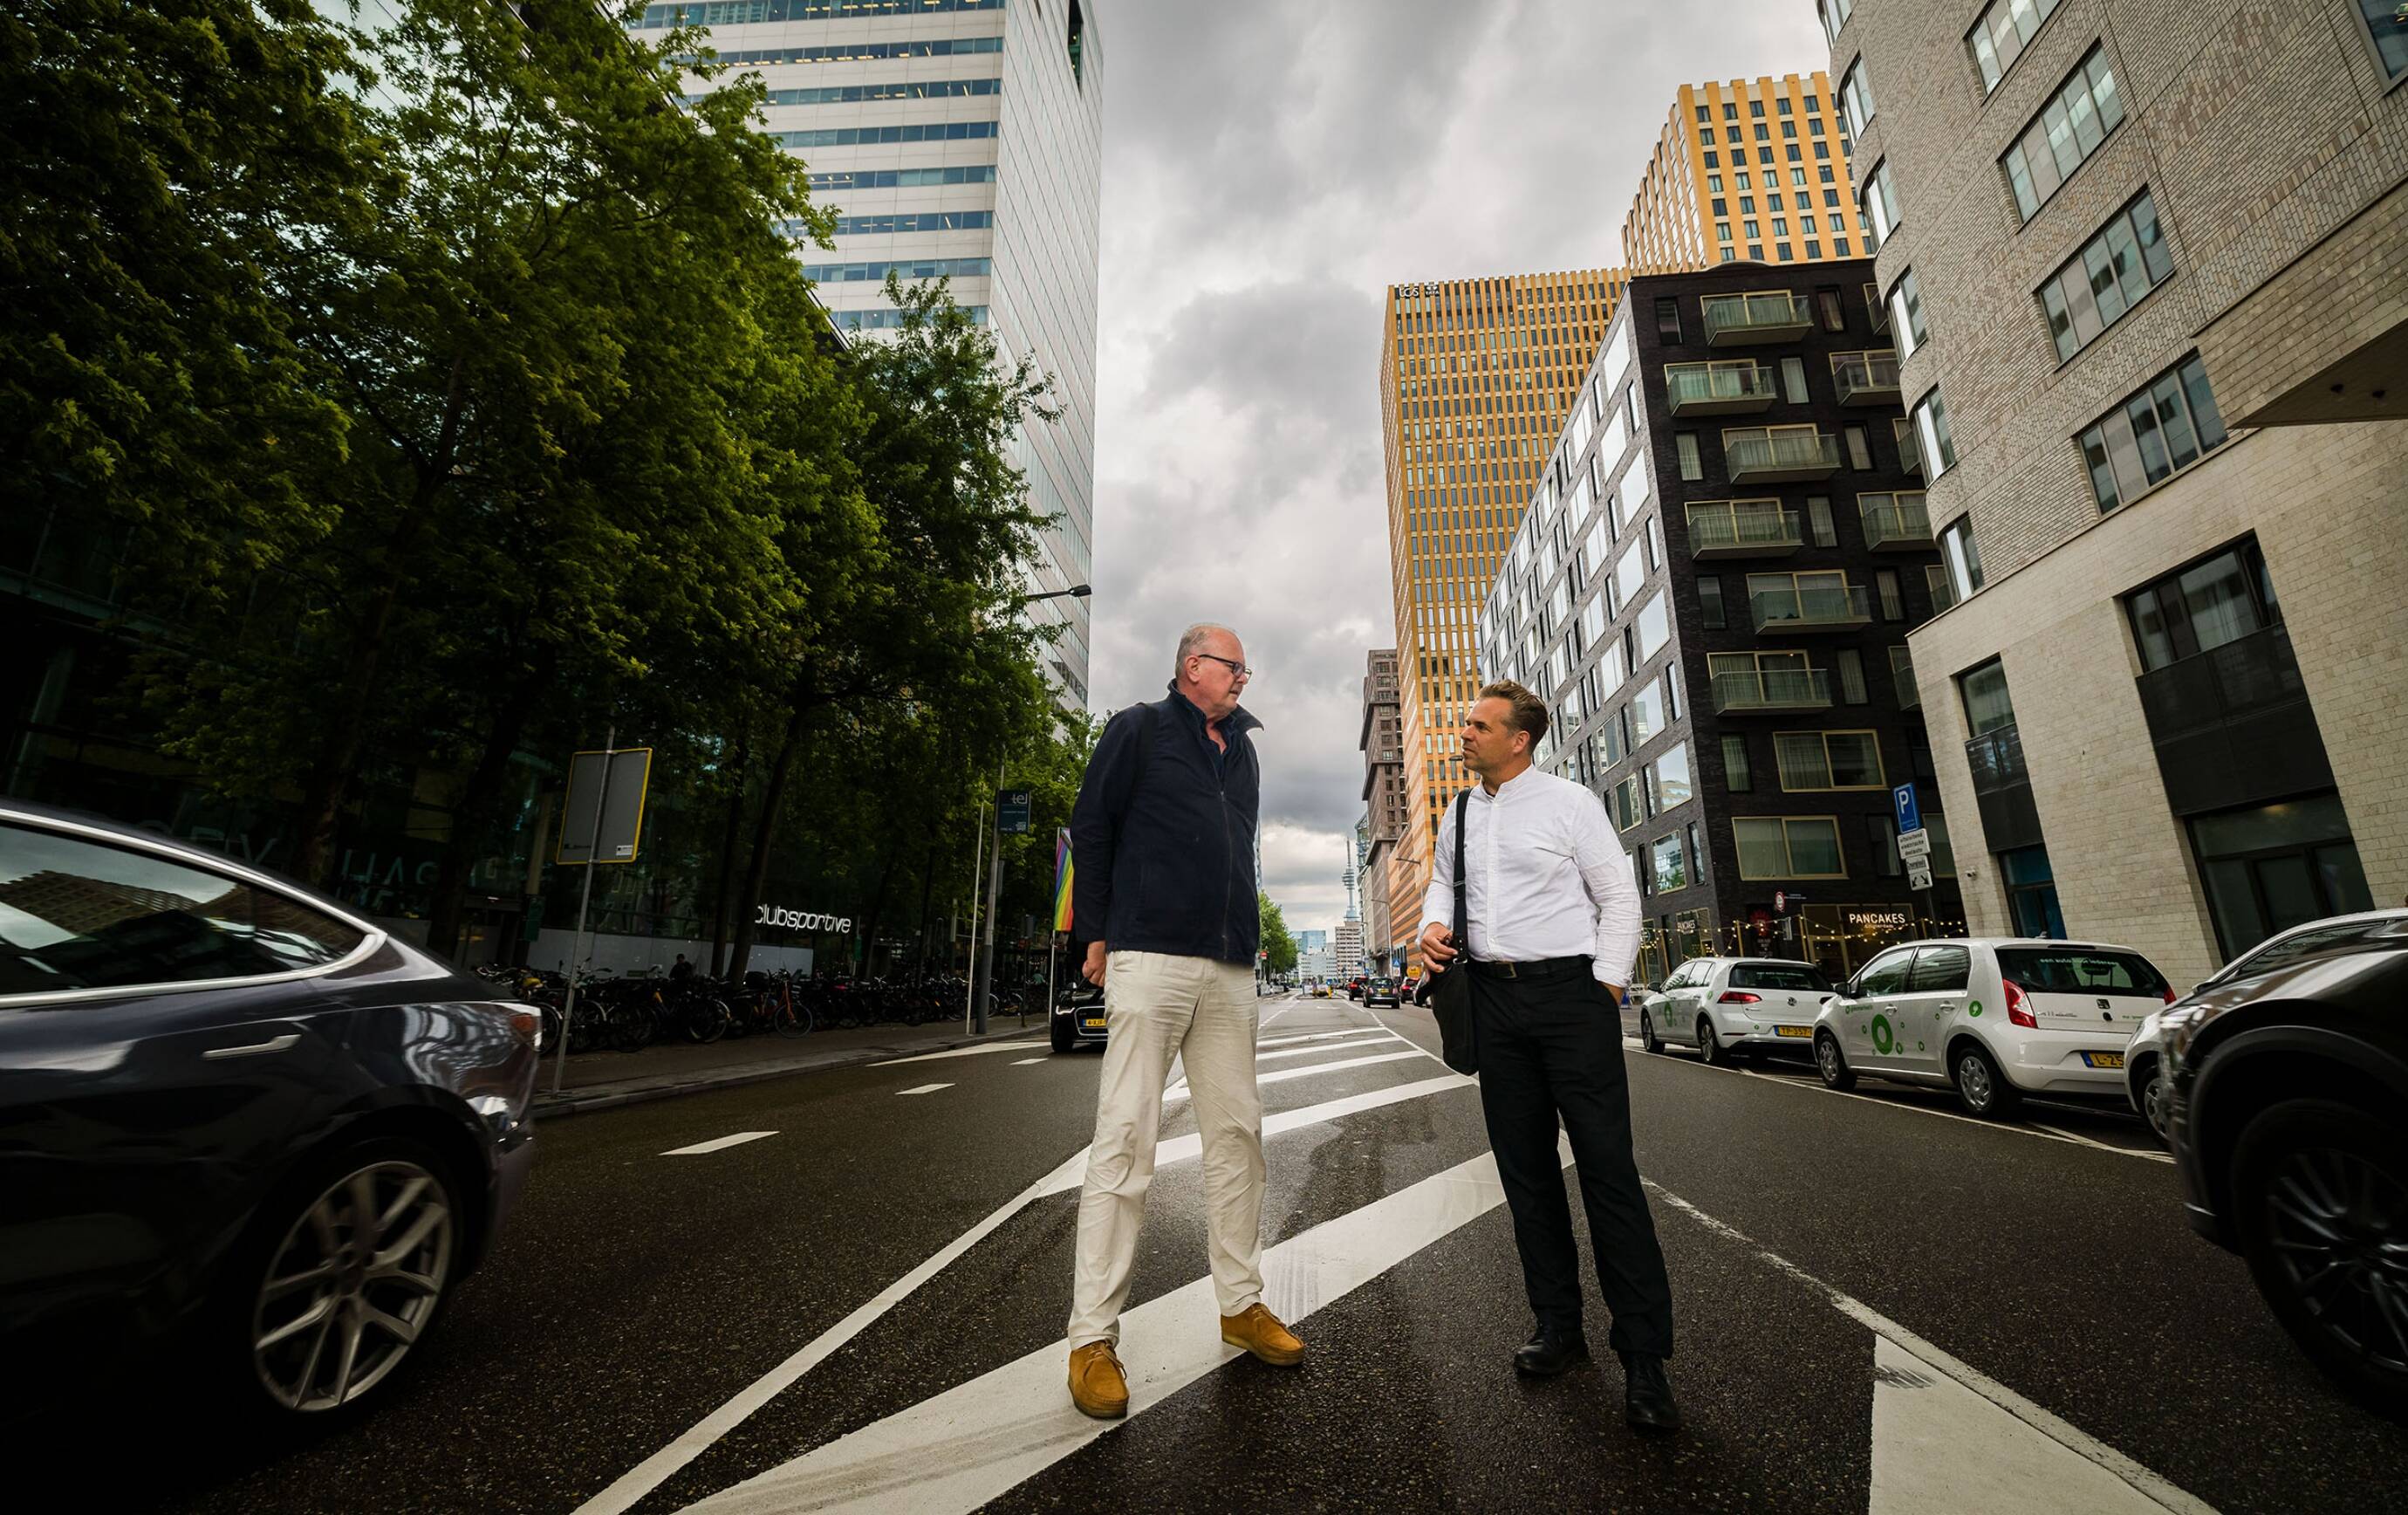 Portret van Ton Schaap en Paco Bunnik die elkaar geïnteresseerd aankijken, op straat tussen auto’s en hoge gebouwen